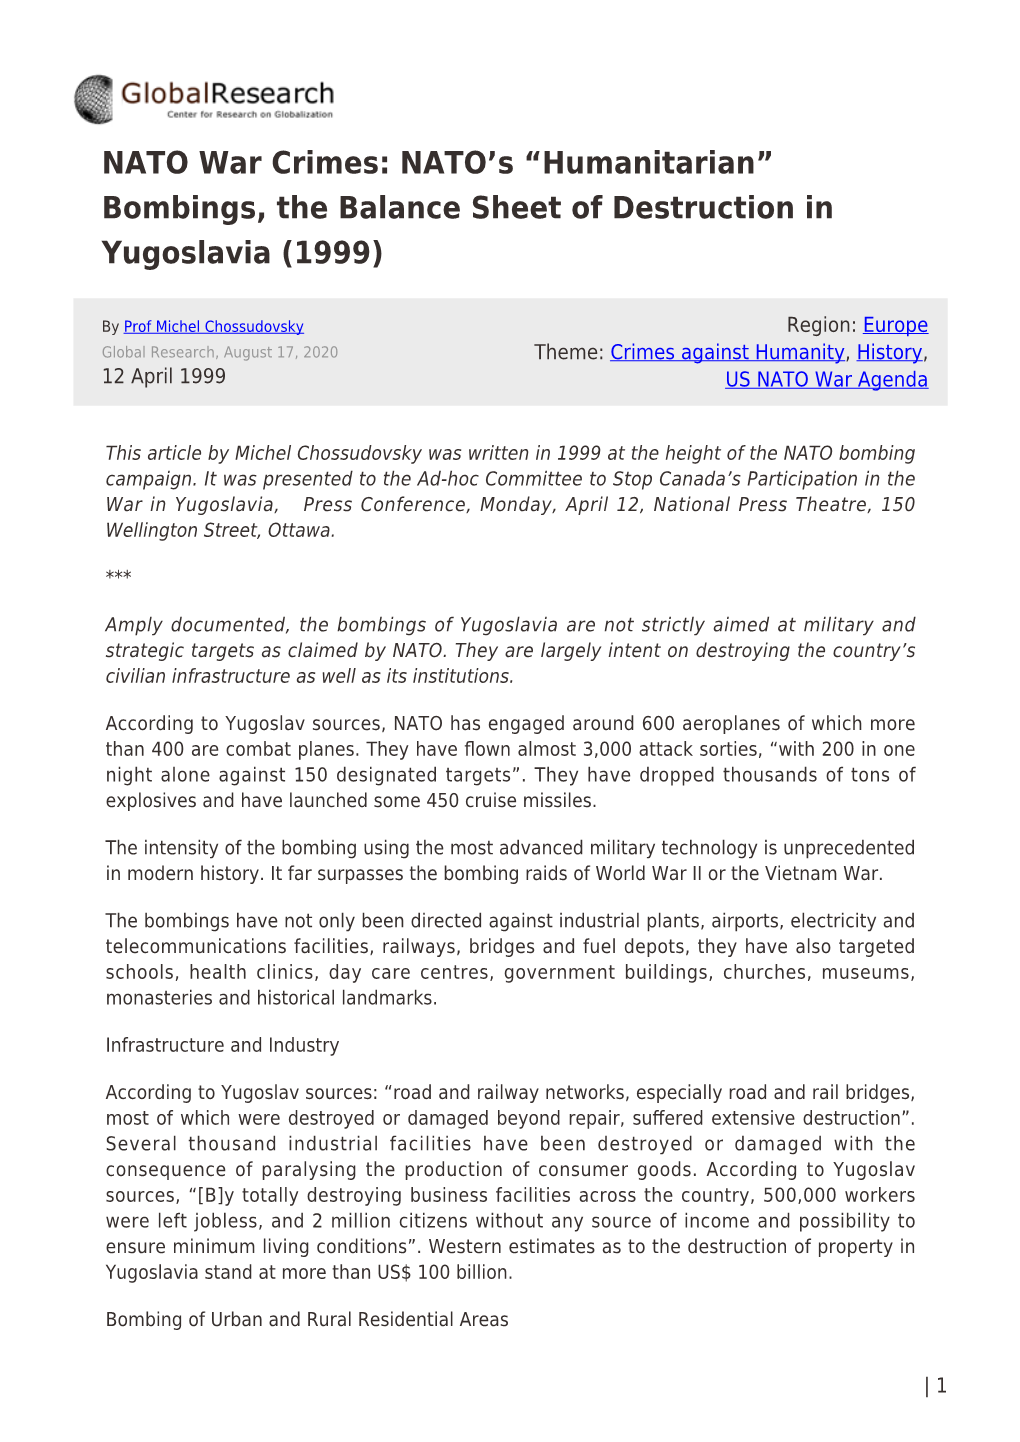 Bombings, the Balance Sheet of Destruction in Yugoslavia (1999)